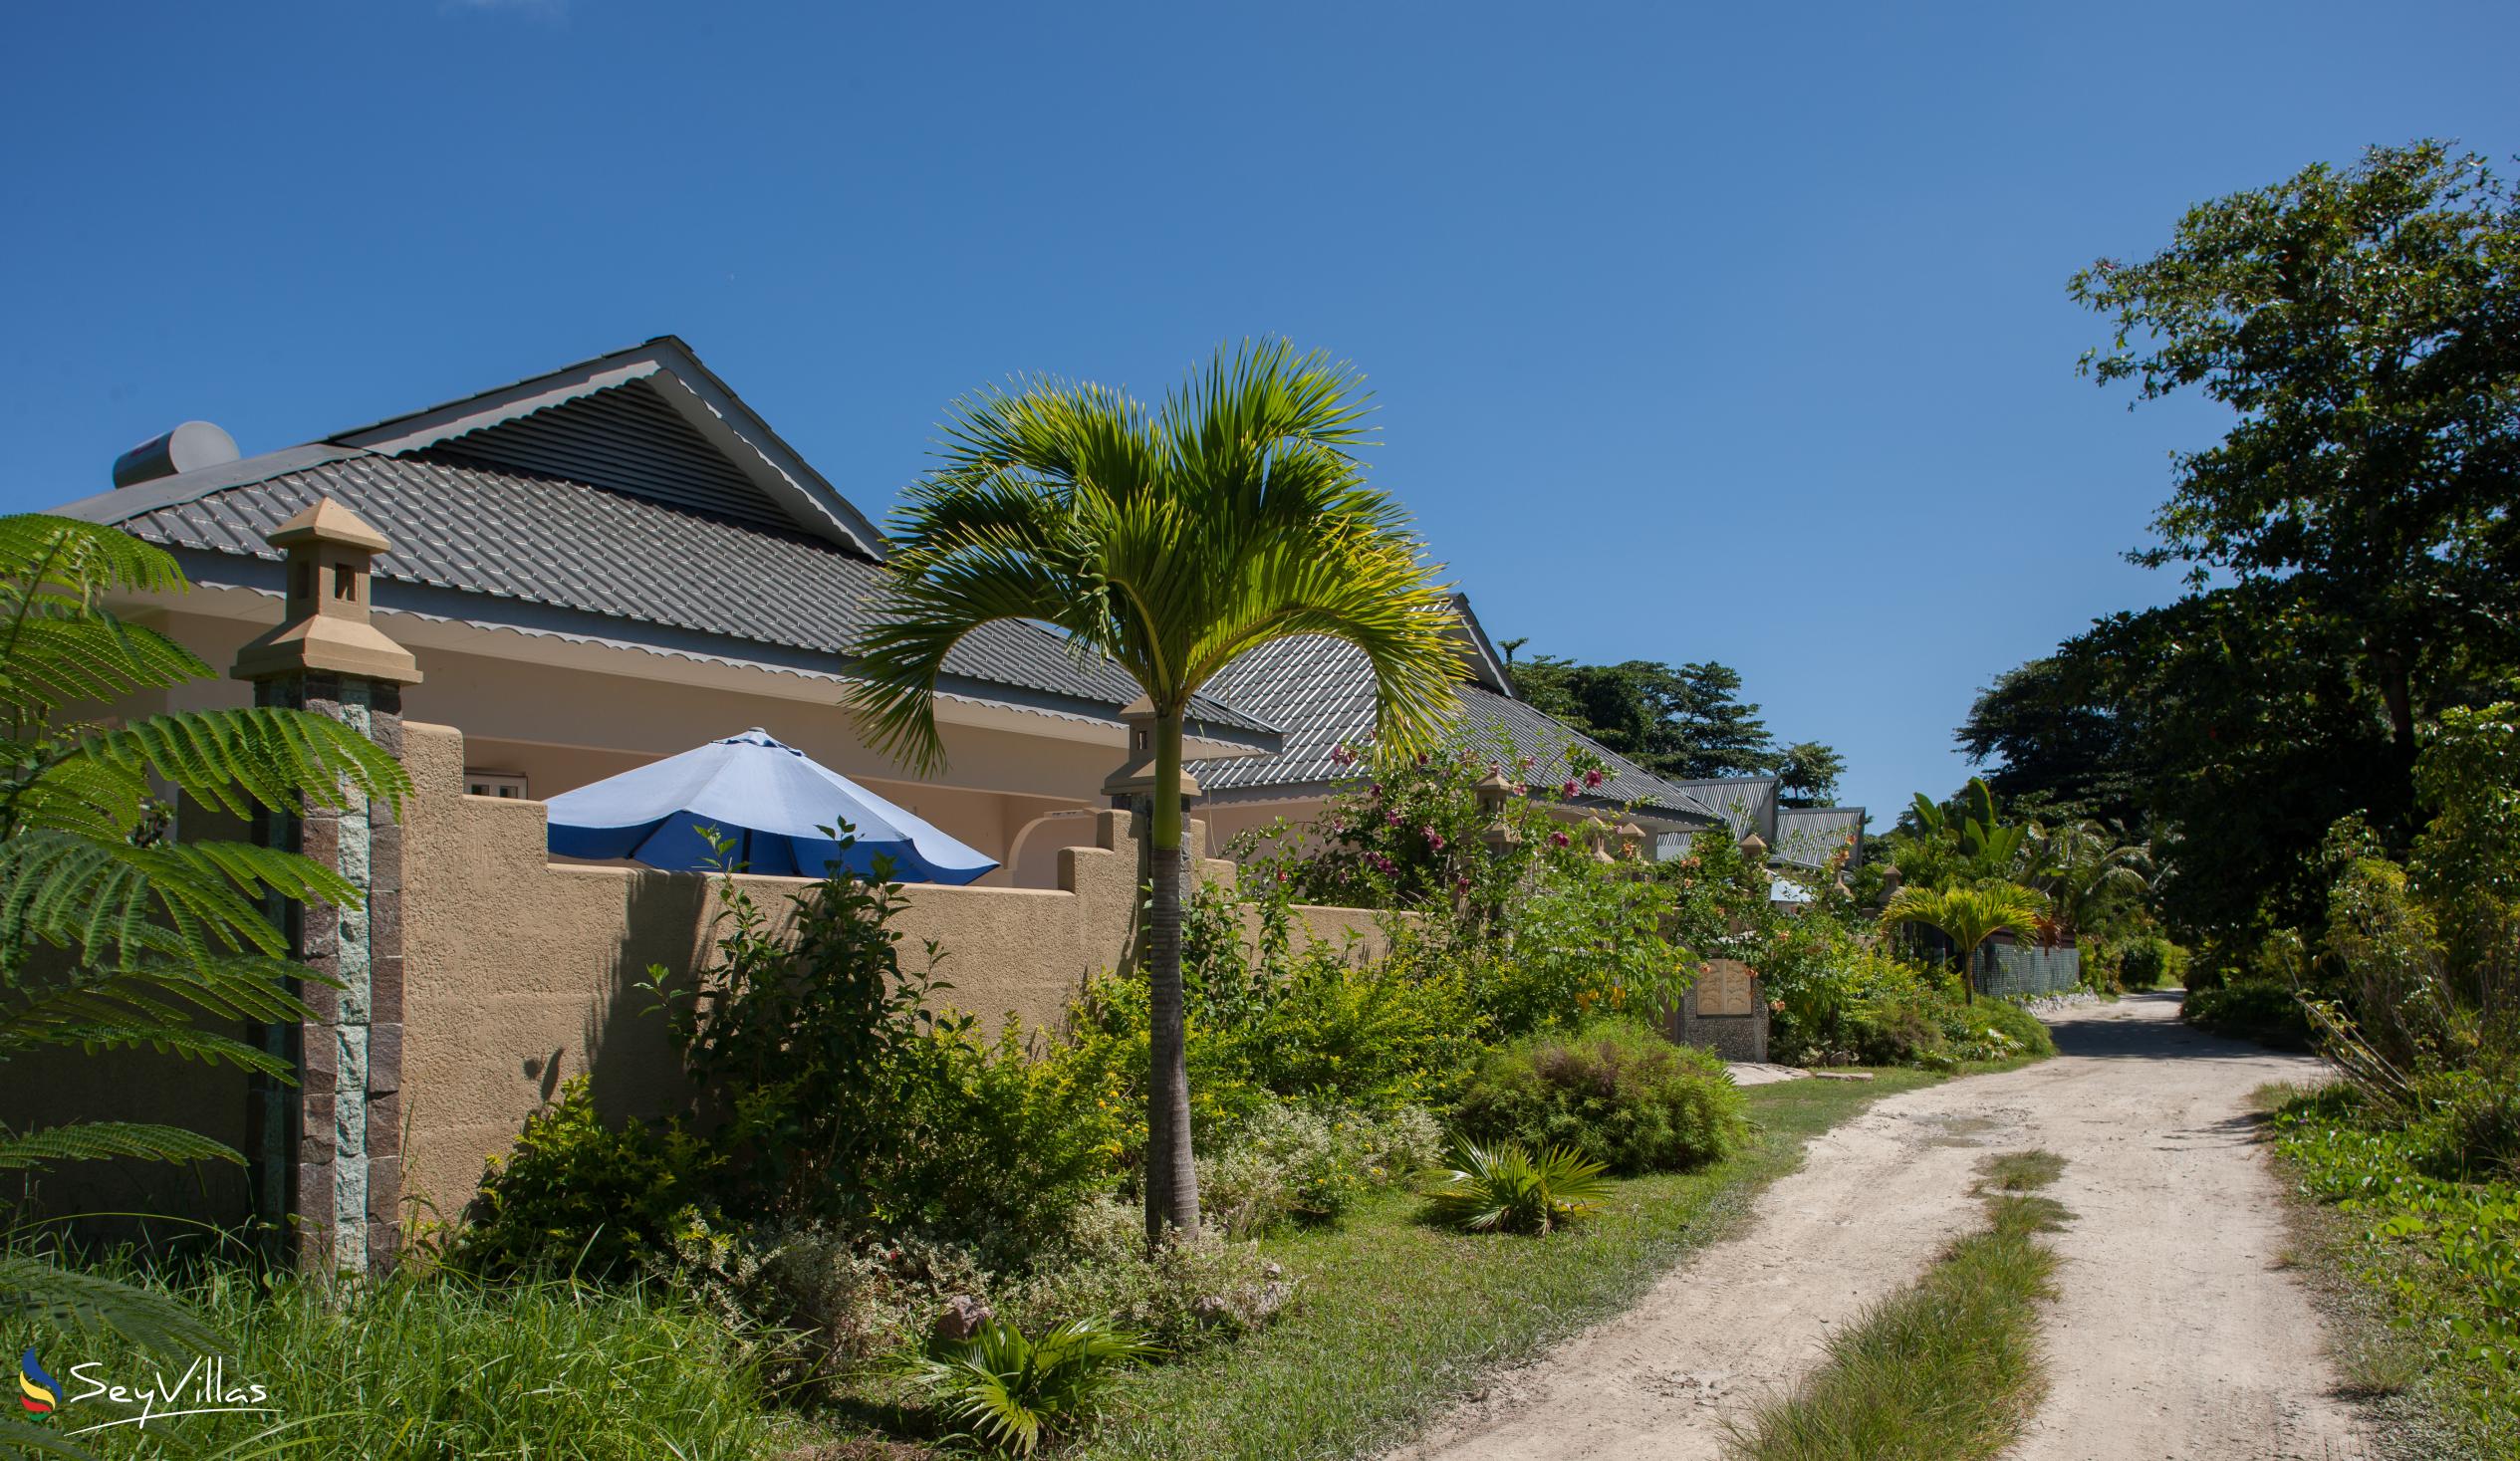 Foto 43: Villa Source D'Argent - Aussenbereich - La Digue (Seychellen)